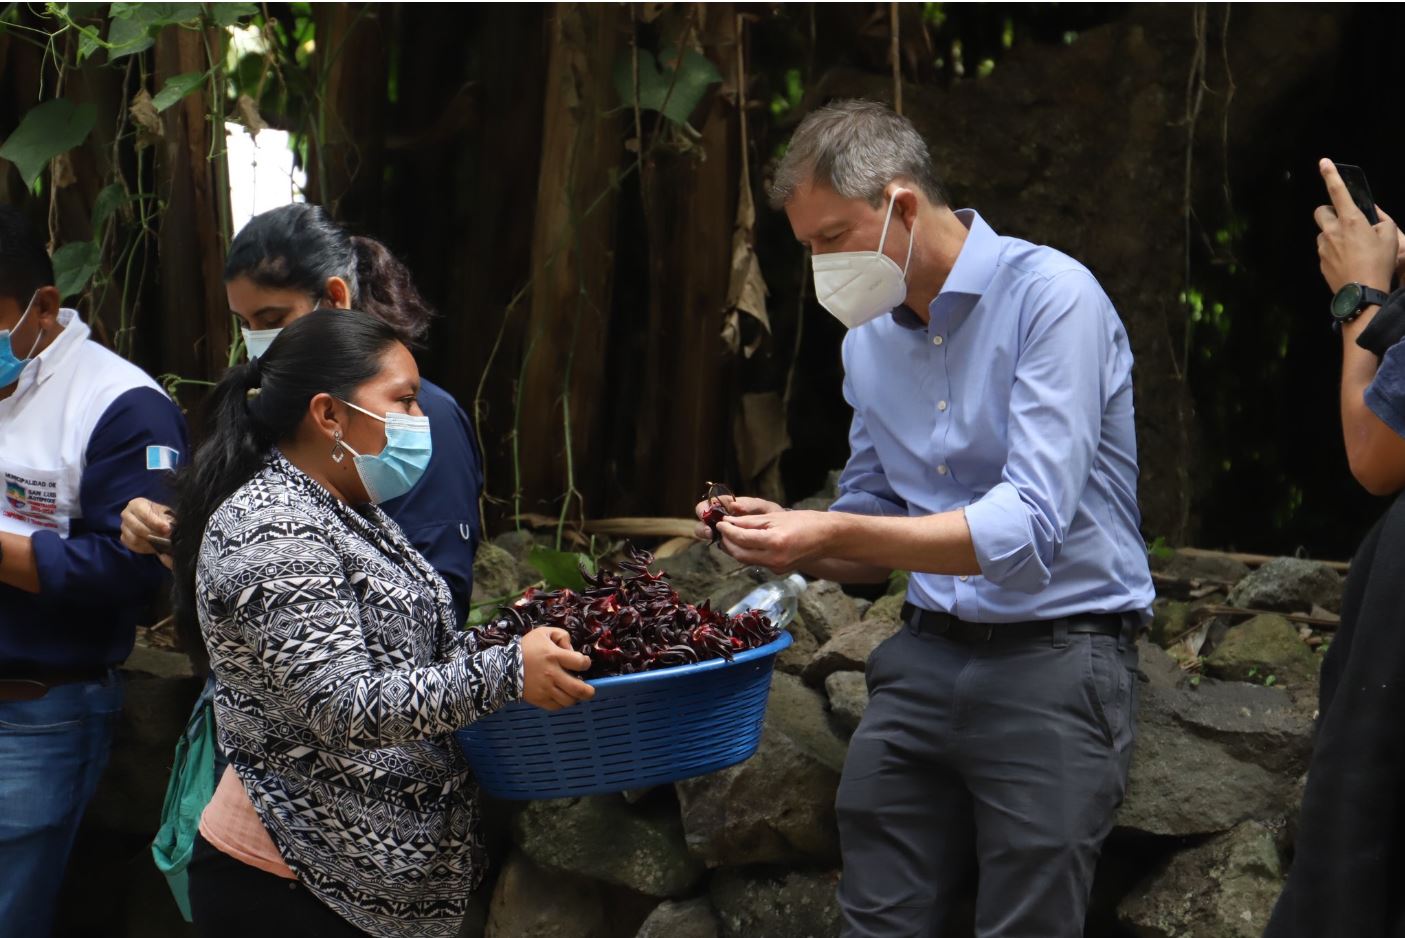 Supervisan proyectos en Jalapa. El embajador británico Nick Whittingham visitó ayer el oriente del país para conocer el trabajo de la FAO, el Ministerio de Agricultura y la Sesan, a fin de fortalecer la seguridad alimentaria. Se explicó que la COP26 abre oportunidad para crear sistemas agroalimentarios más resilientes e inclusivos.